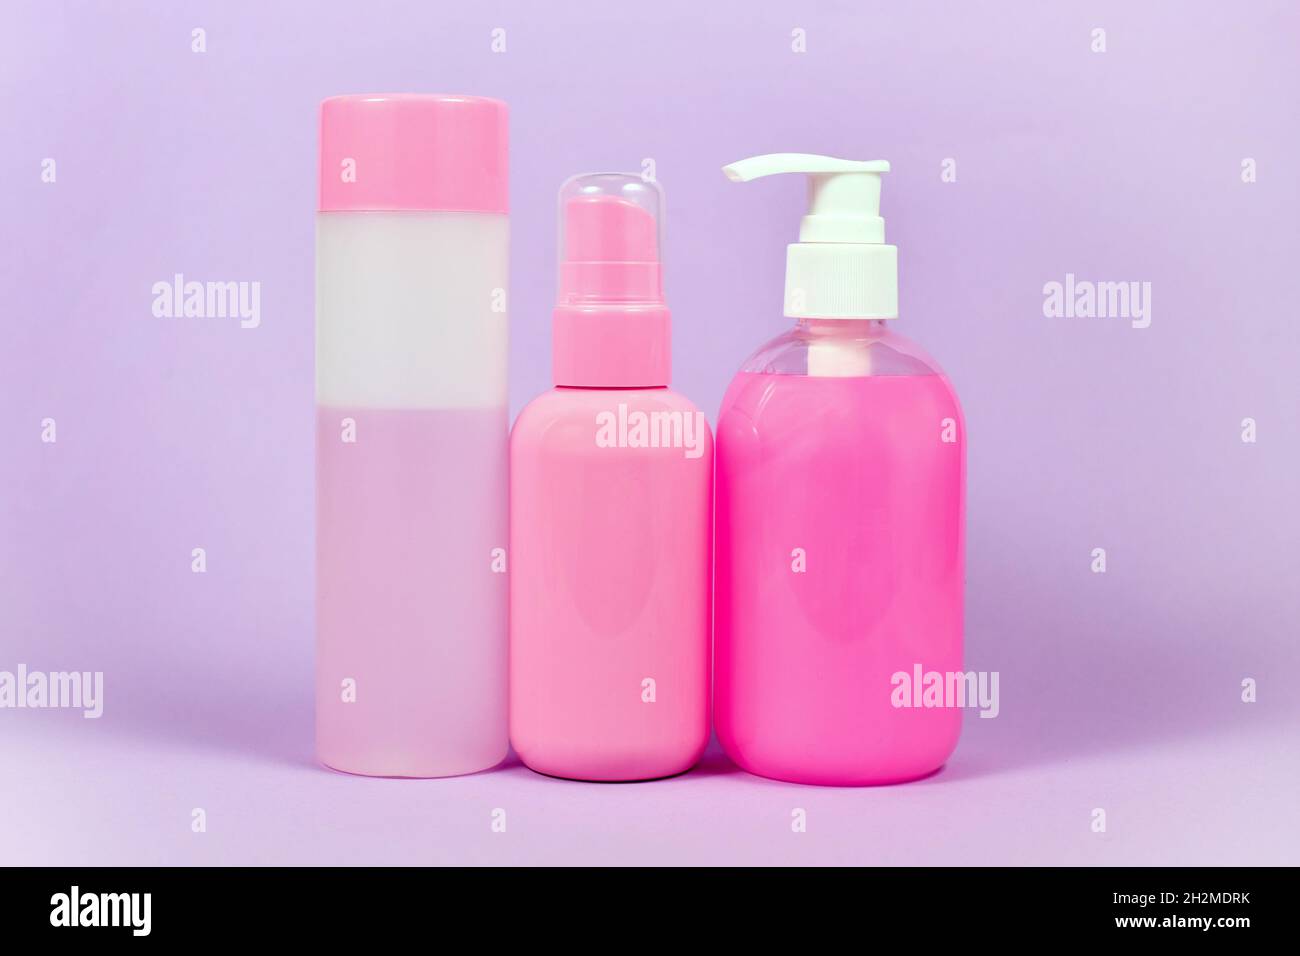 Stereotype rosa gefärbte Hygieneprodukte, die an Frauen vermarktet werden Stockfoto